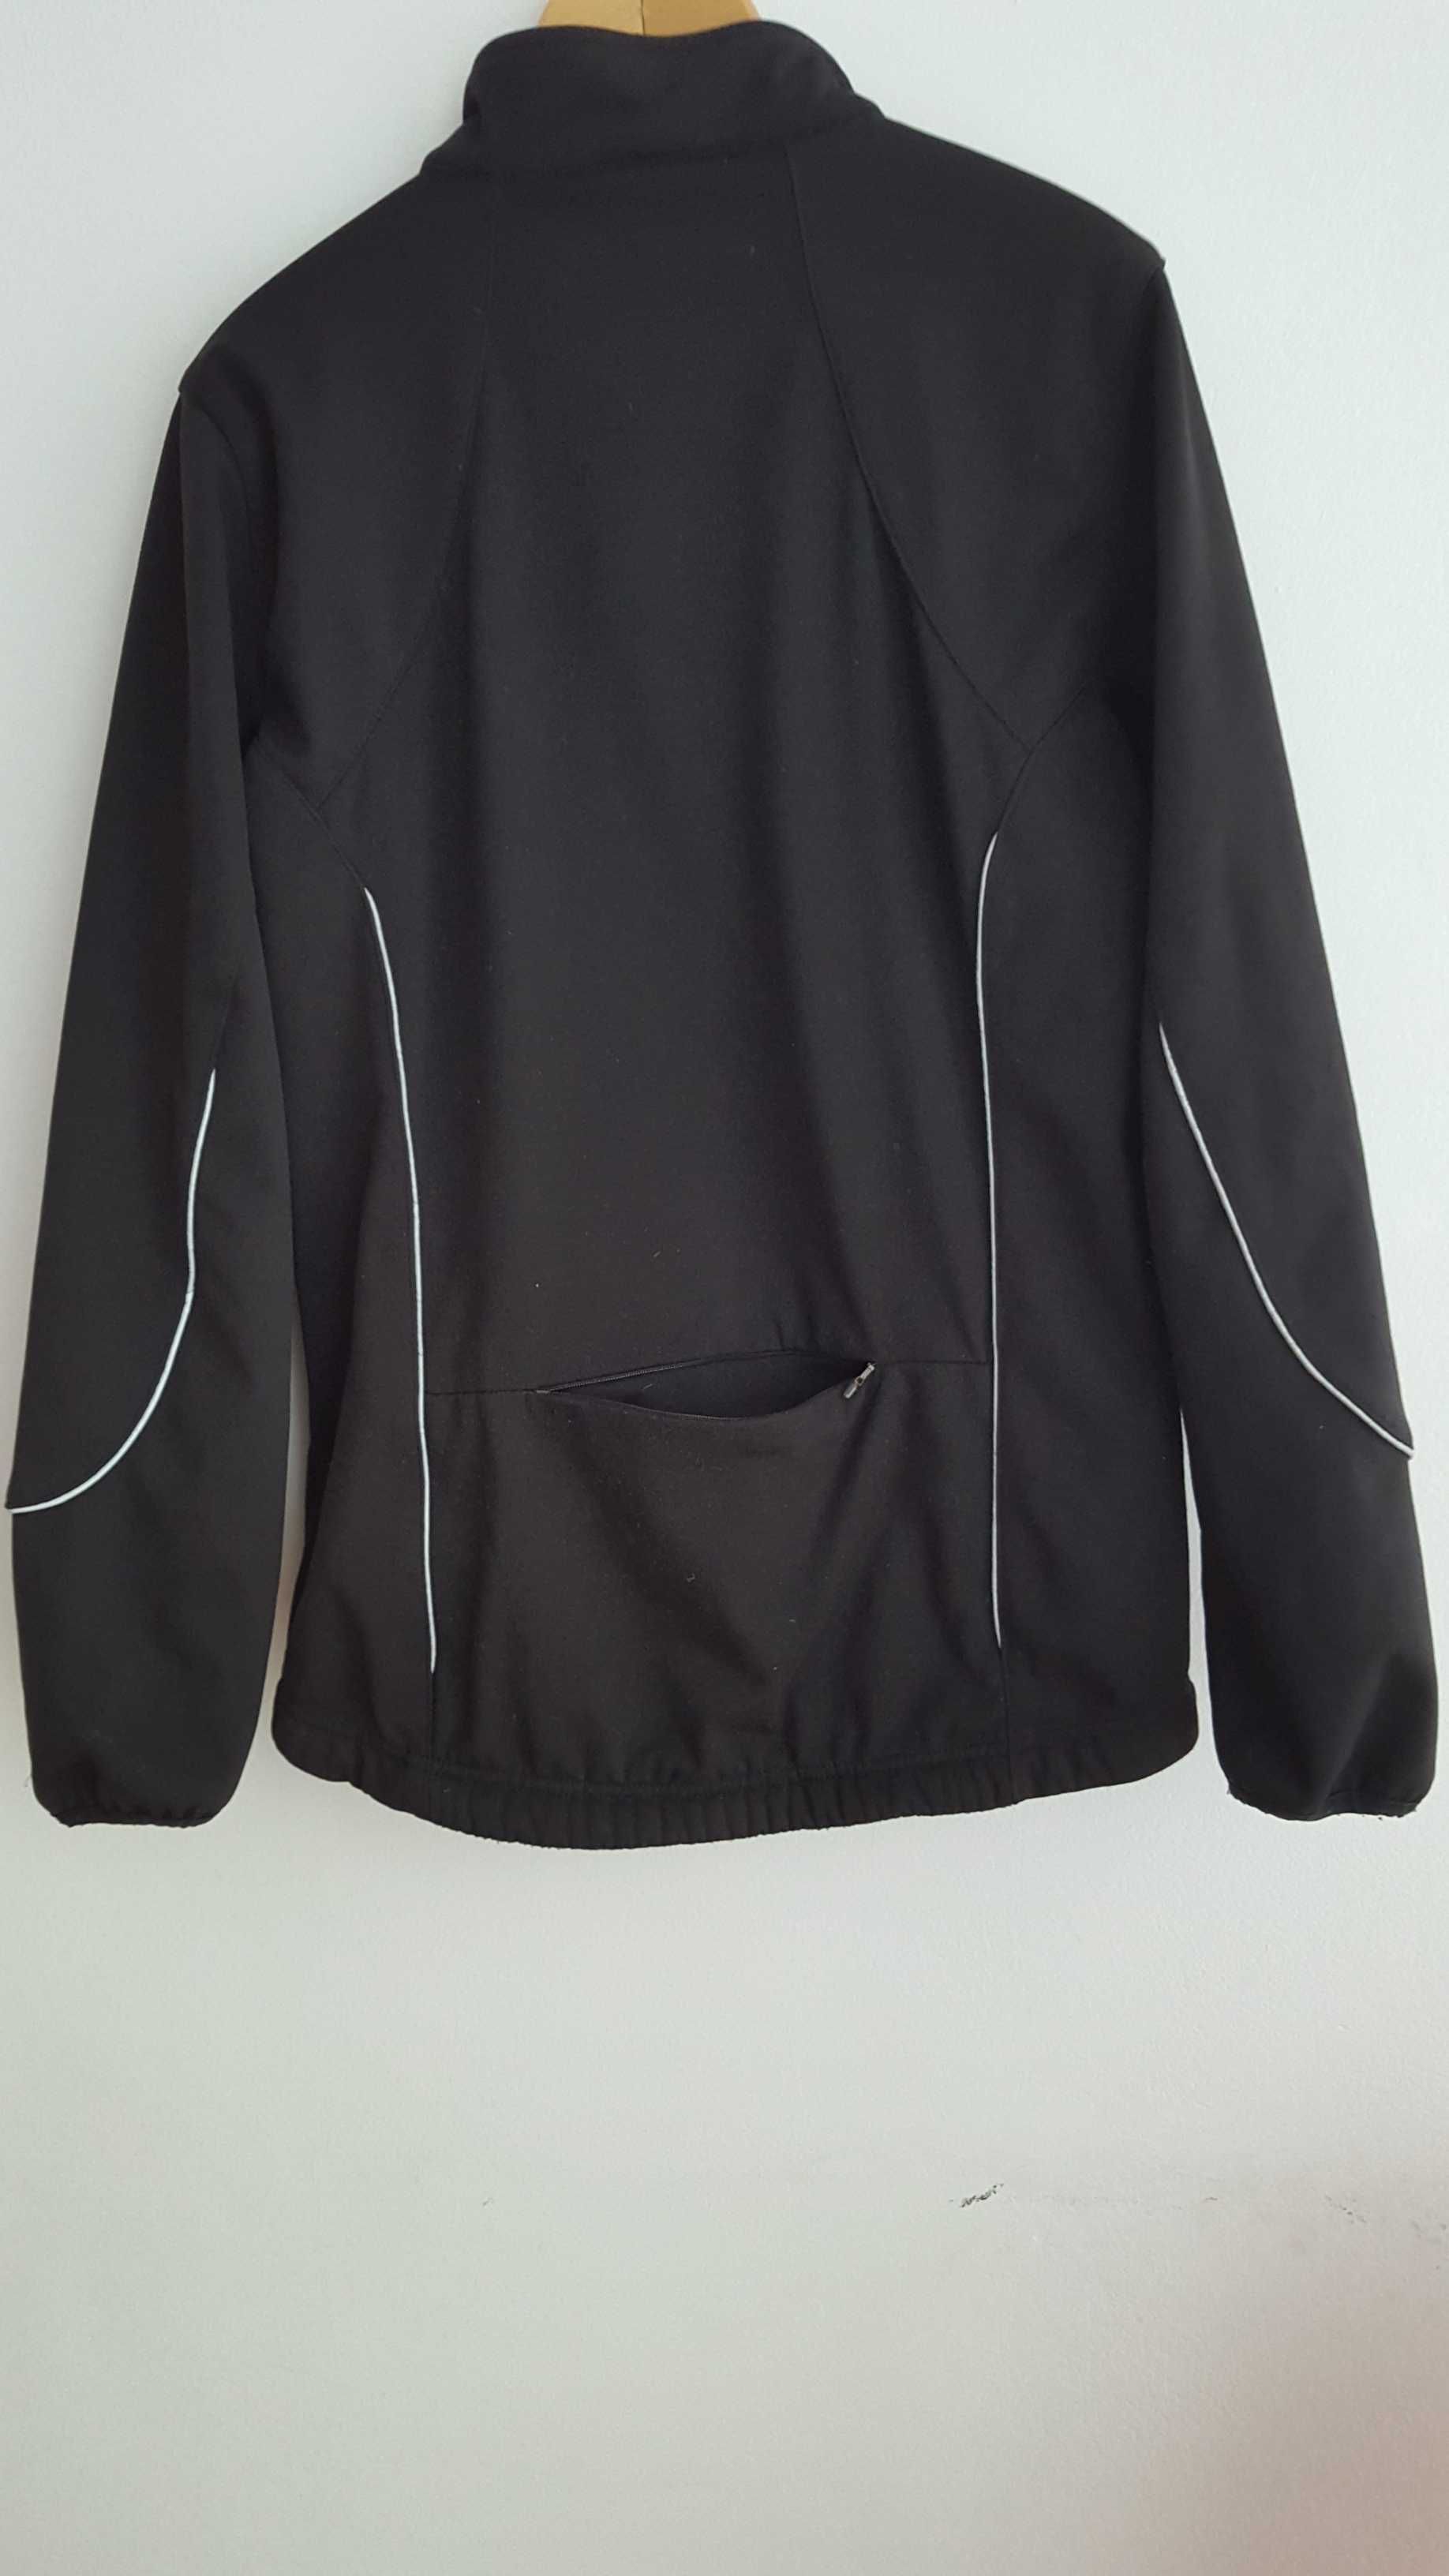 Bluza rowerowa Crane Sports, czarna, rozmiar M